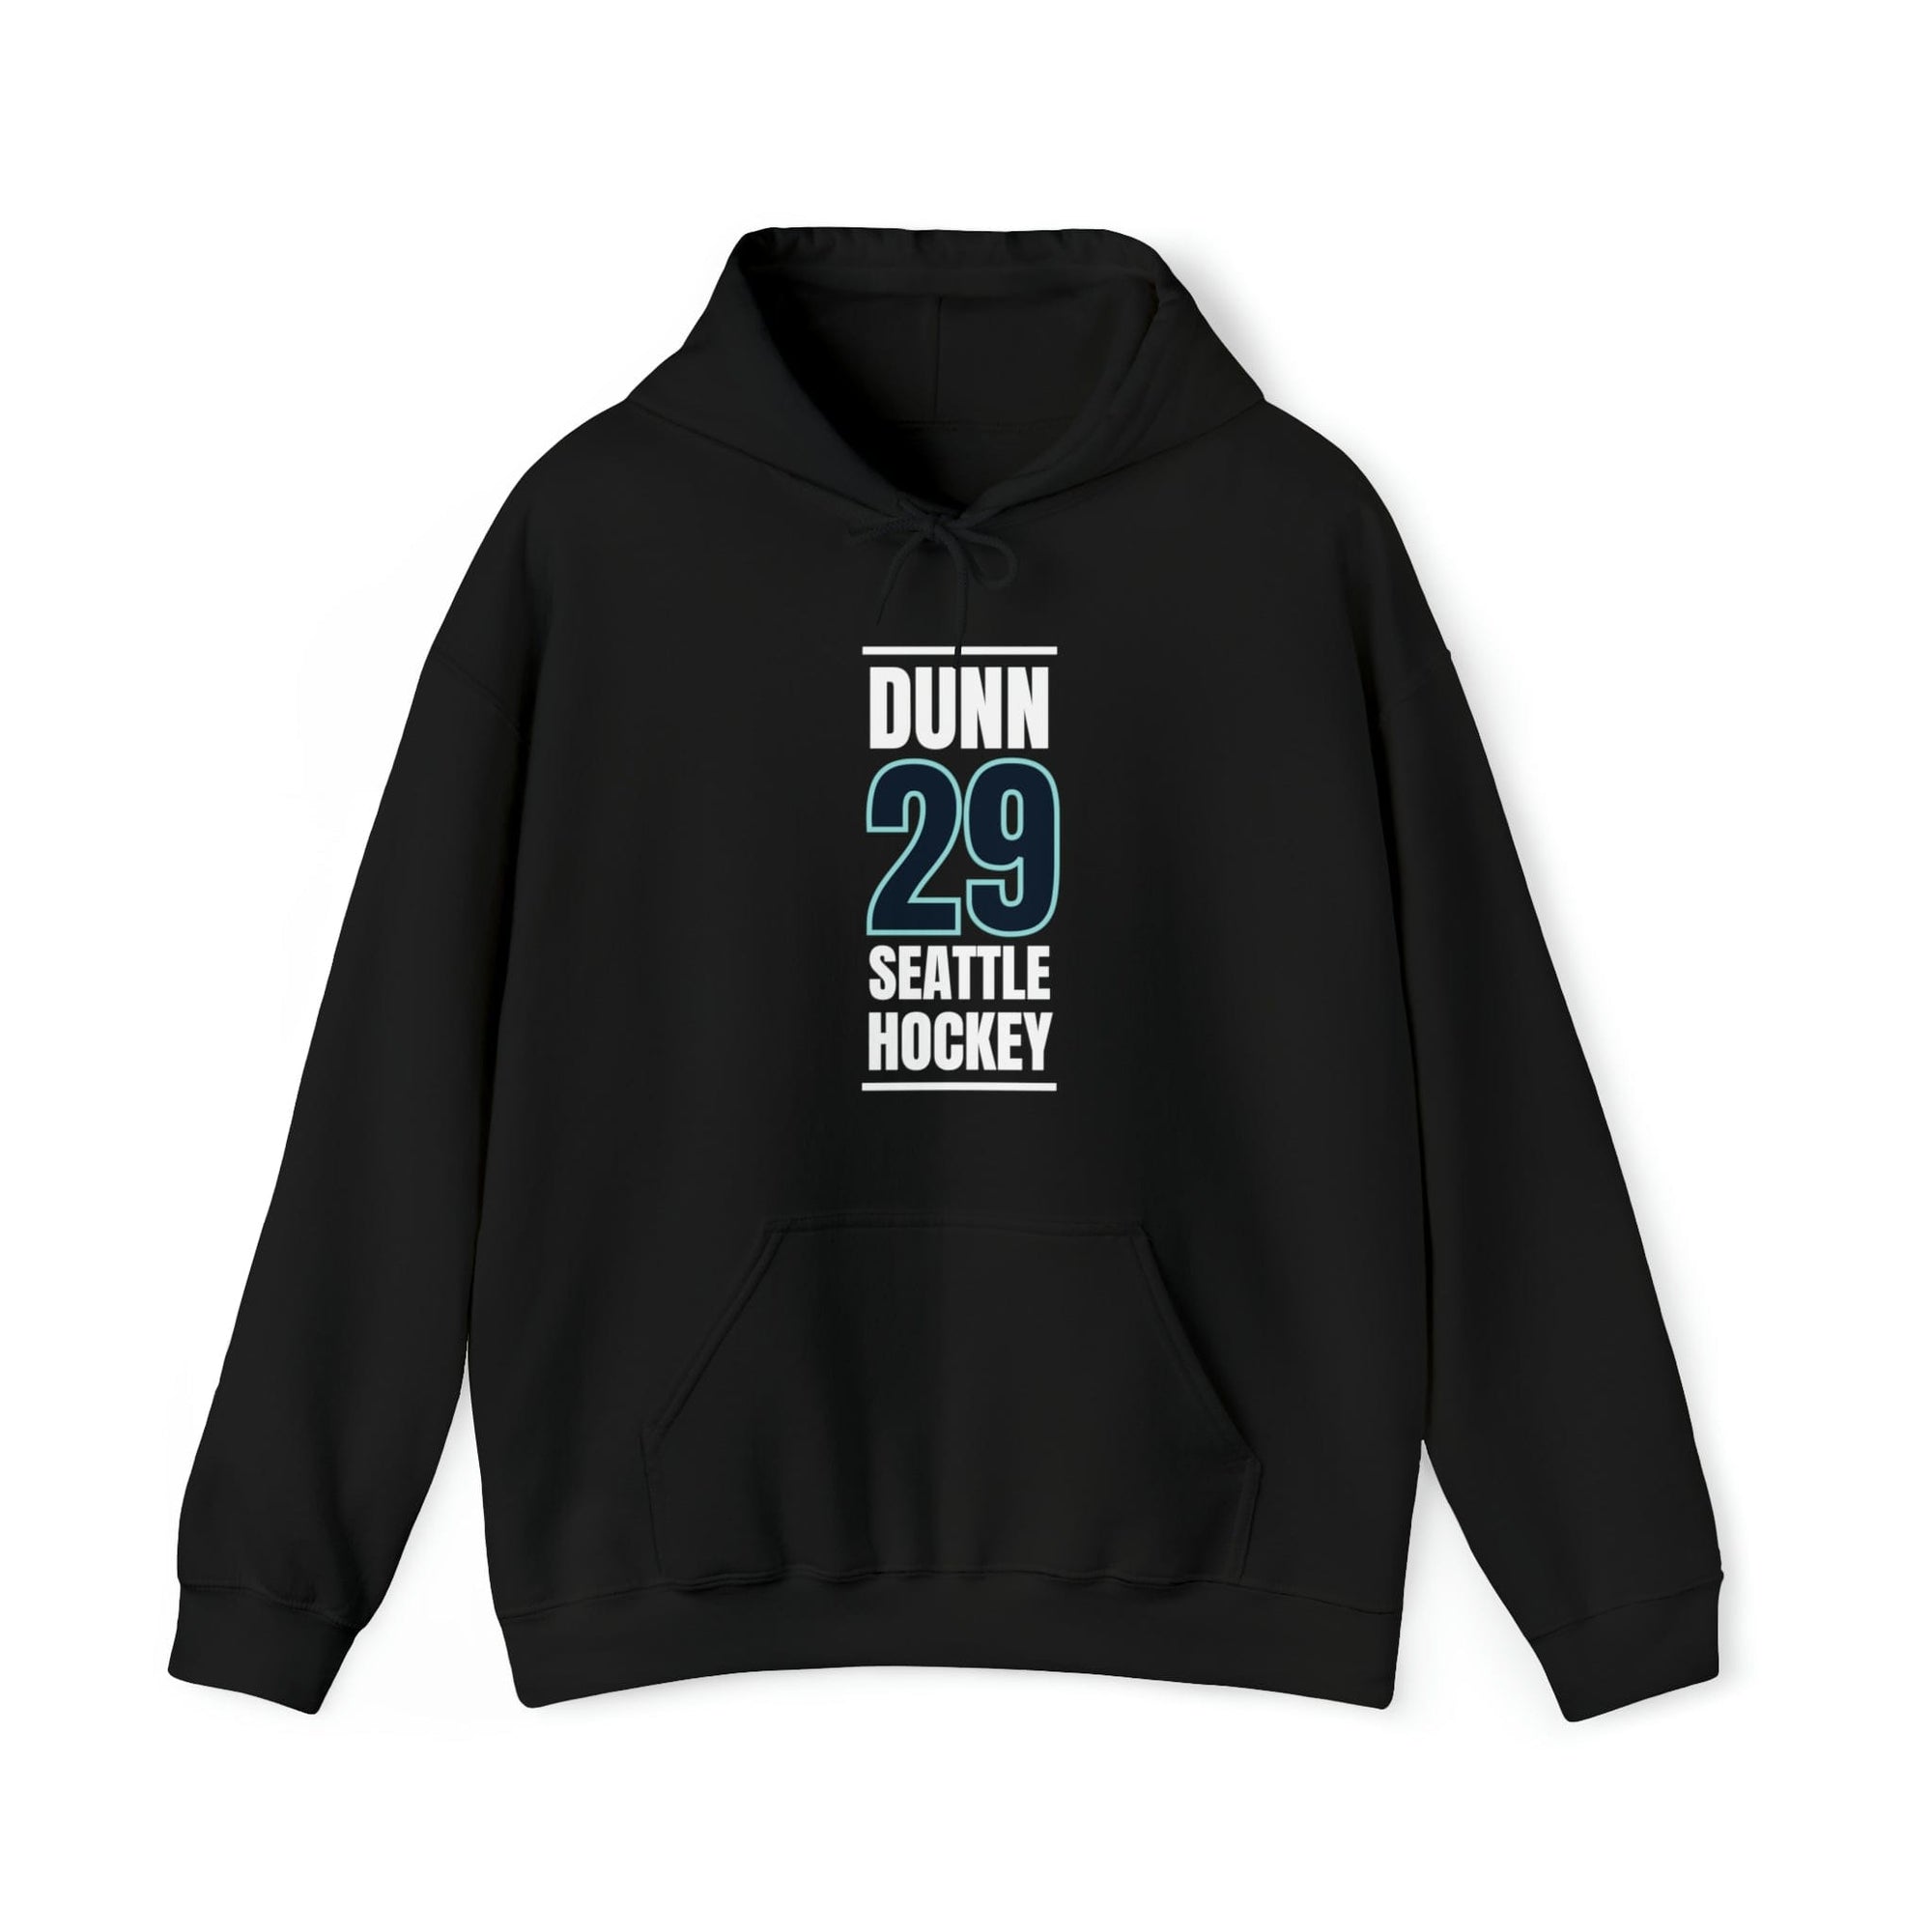 Hoodie Dunn 29 Seattle Hockey Black Vertical Design Unisex Hooded Sweatshirt